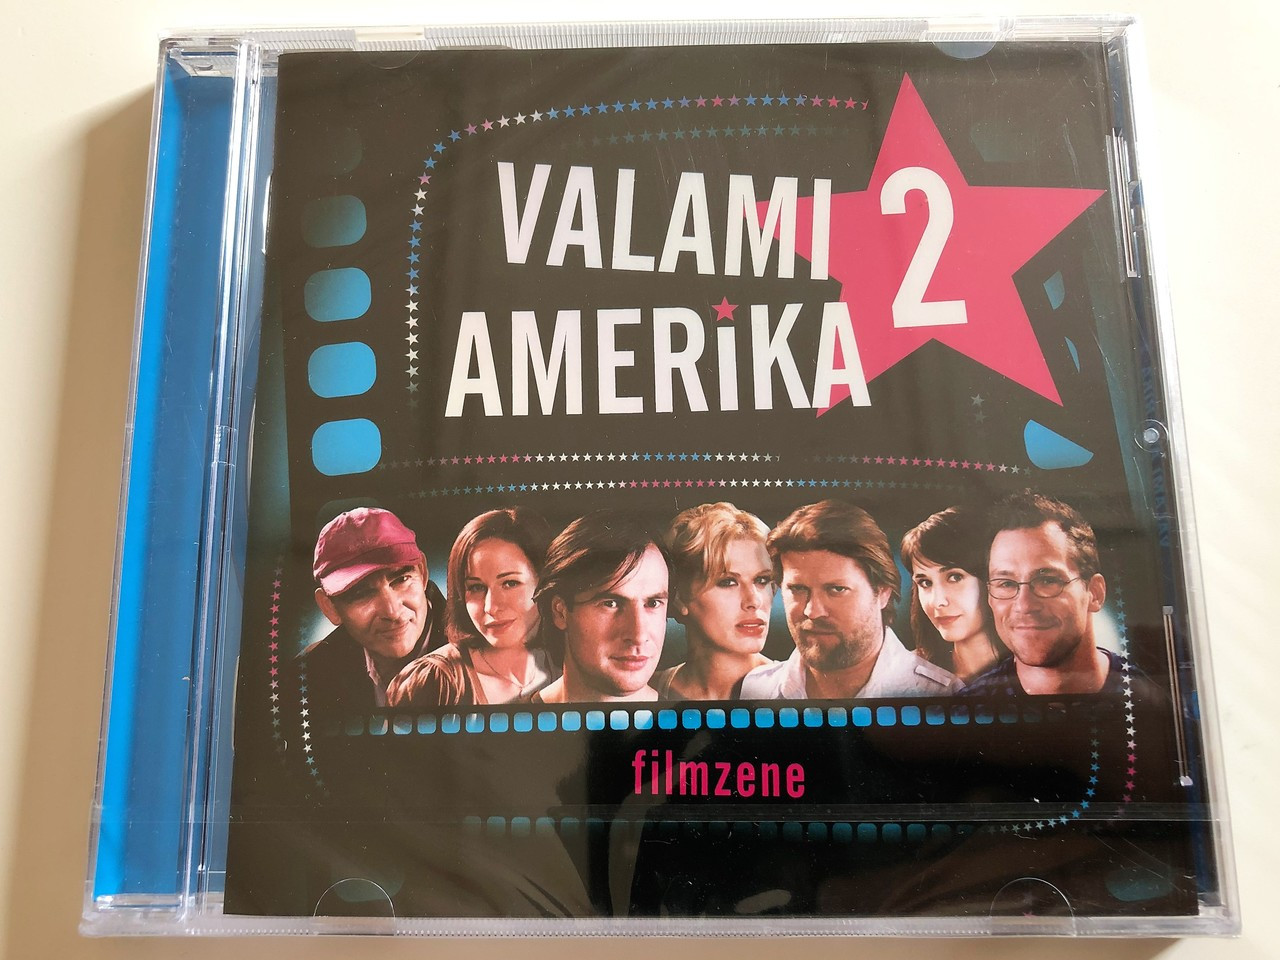 Valami Amerika 2 Filmzene - Soundtracks / Audio CD 2008 / Tóth Gabi,  Oroszlán Szonja, Tompos Kátya, Igó Éva, Tankcsapda, Beat Dis, WunderBar,  Ónodi Eszter / Made in Hungary / 11+1 dalt